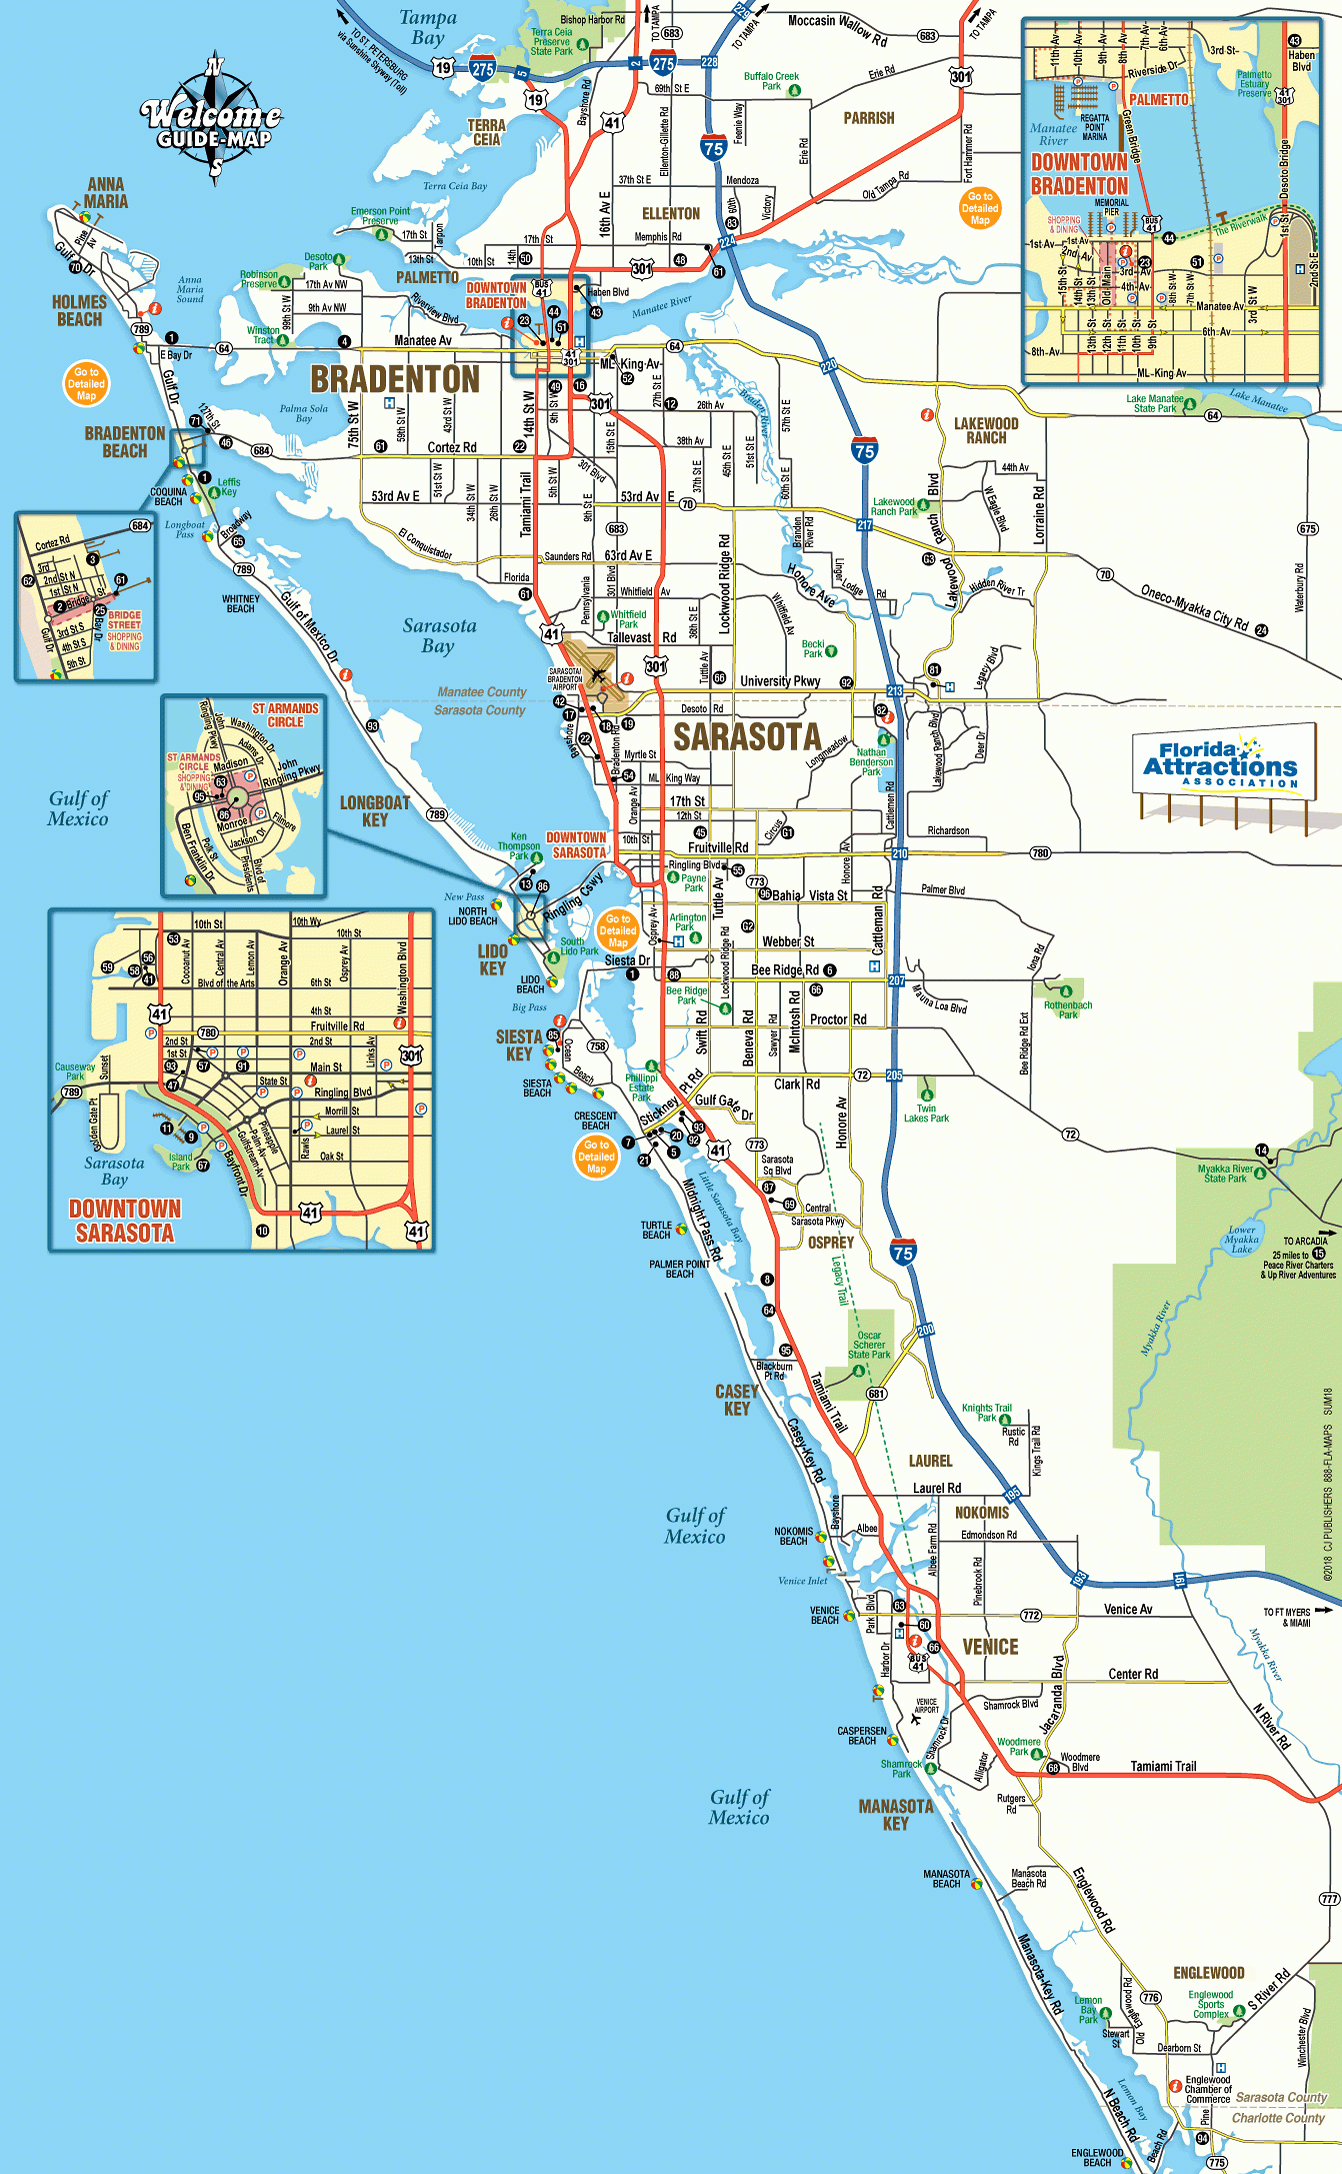 Sarasota Map - Falsomesias - Map Of Sarasota Florida Area